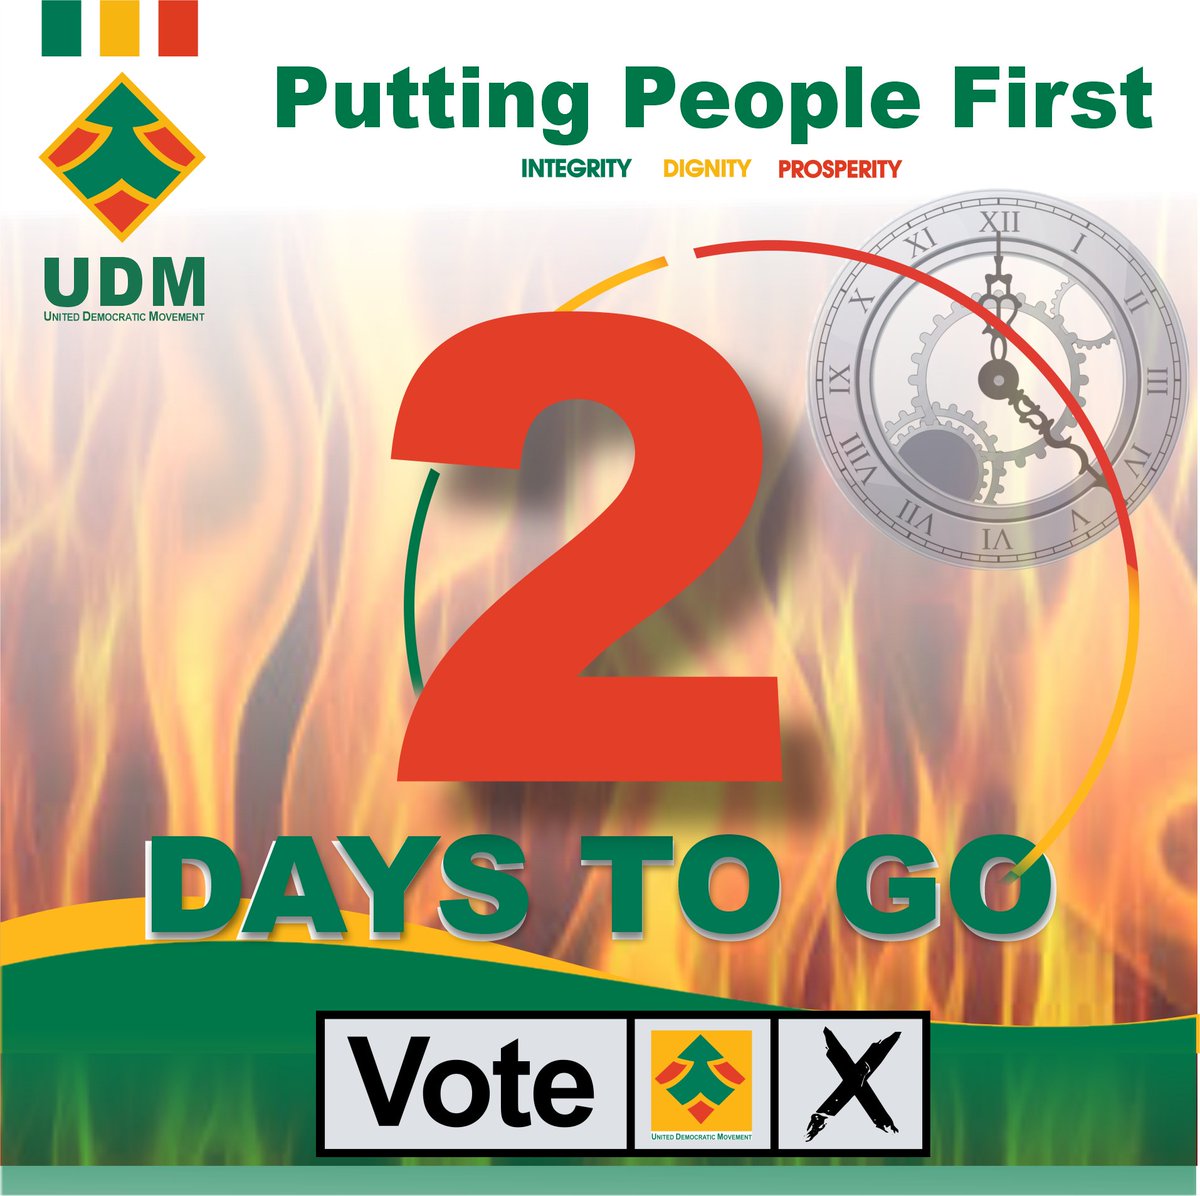 On your marks, get set!!!! 💚💛❤️
.
.
.
#UDM #VoteUDM #UDM2021 #LGE2021